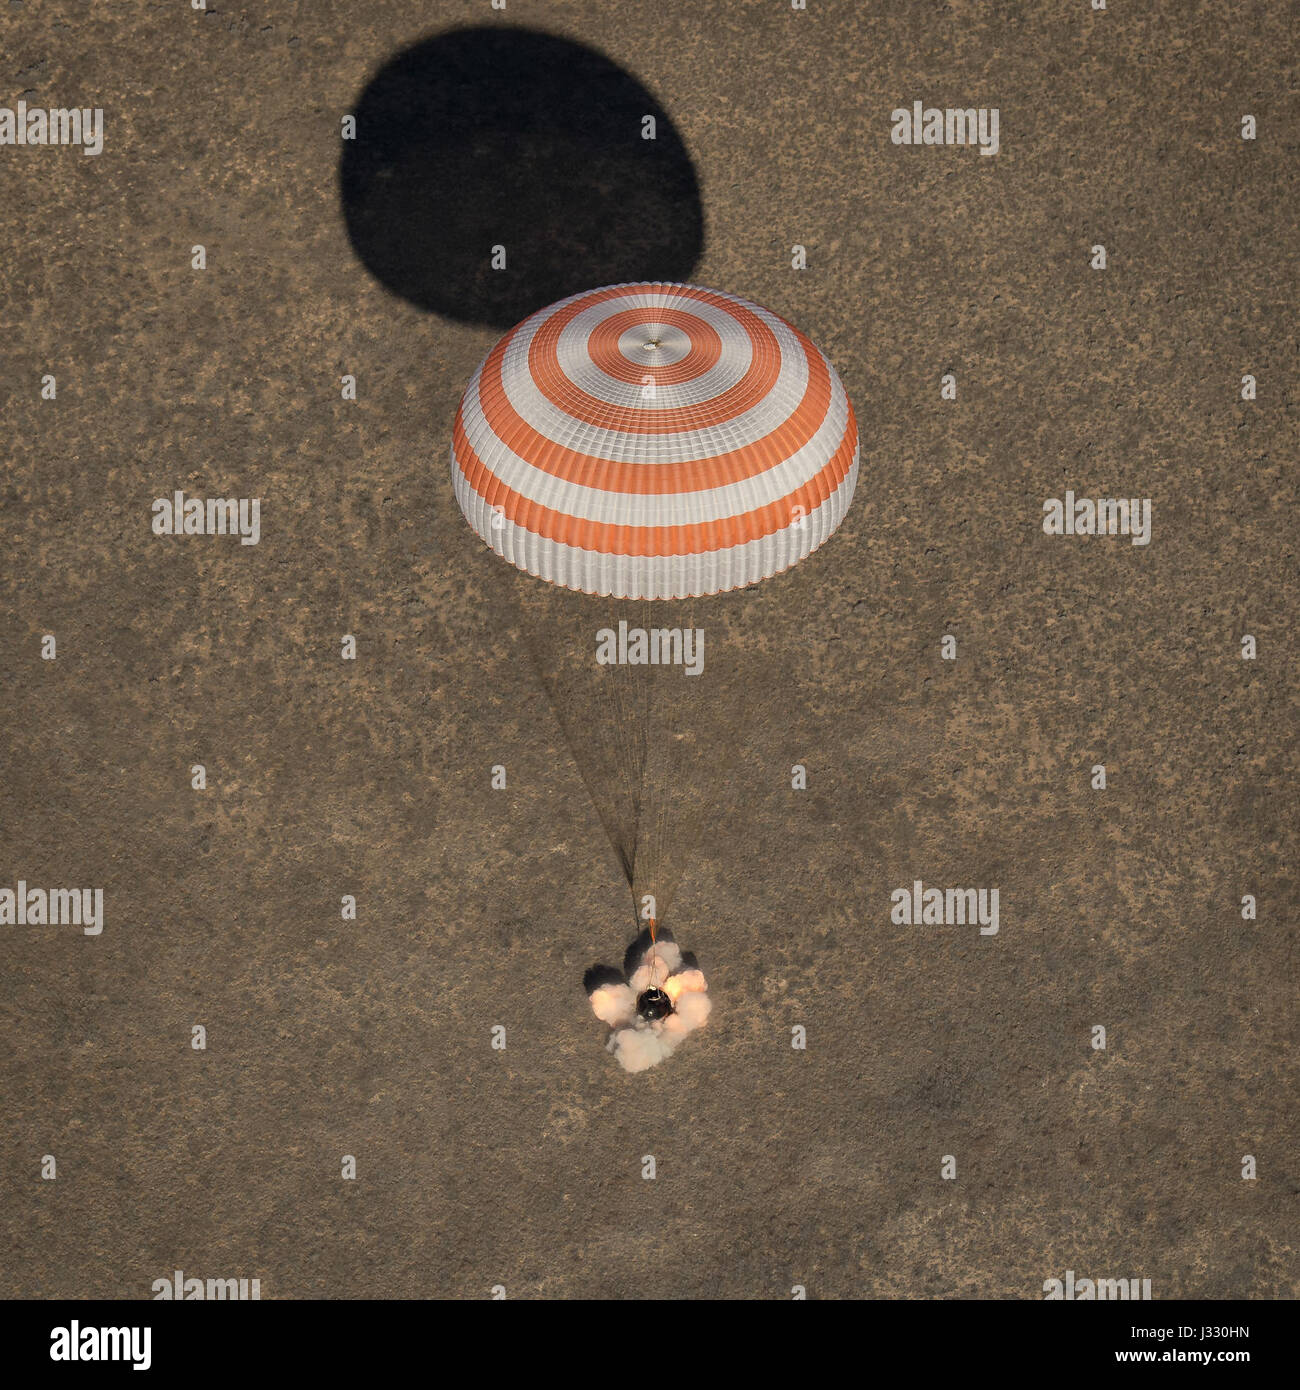 La nave espacial Soyuz MS-02 es visto como tierras con la expedición 50 Comandante Shane Kimbrough de ingenieros de vuelo de la NASA y Sergey Ryzhikov y Andrey Borisenko de Roscosmos, cerca del pueblo de Zhezkazgan, Kazajstán, el lunes, 10 de abril de 2017 (Kazajo tiempo). Kimbrough, Ryzhikov y Borisenko regresan después de 173 días en el espacio donde servían como miembros de la expedición 49 y 50 tripulantes a bordo de la Estación Espacial Internacional. Crédito de la foto: (NASA/Bill Ingalls) Foto de stock